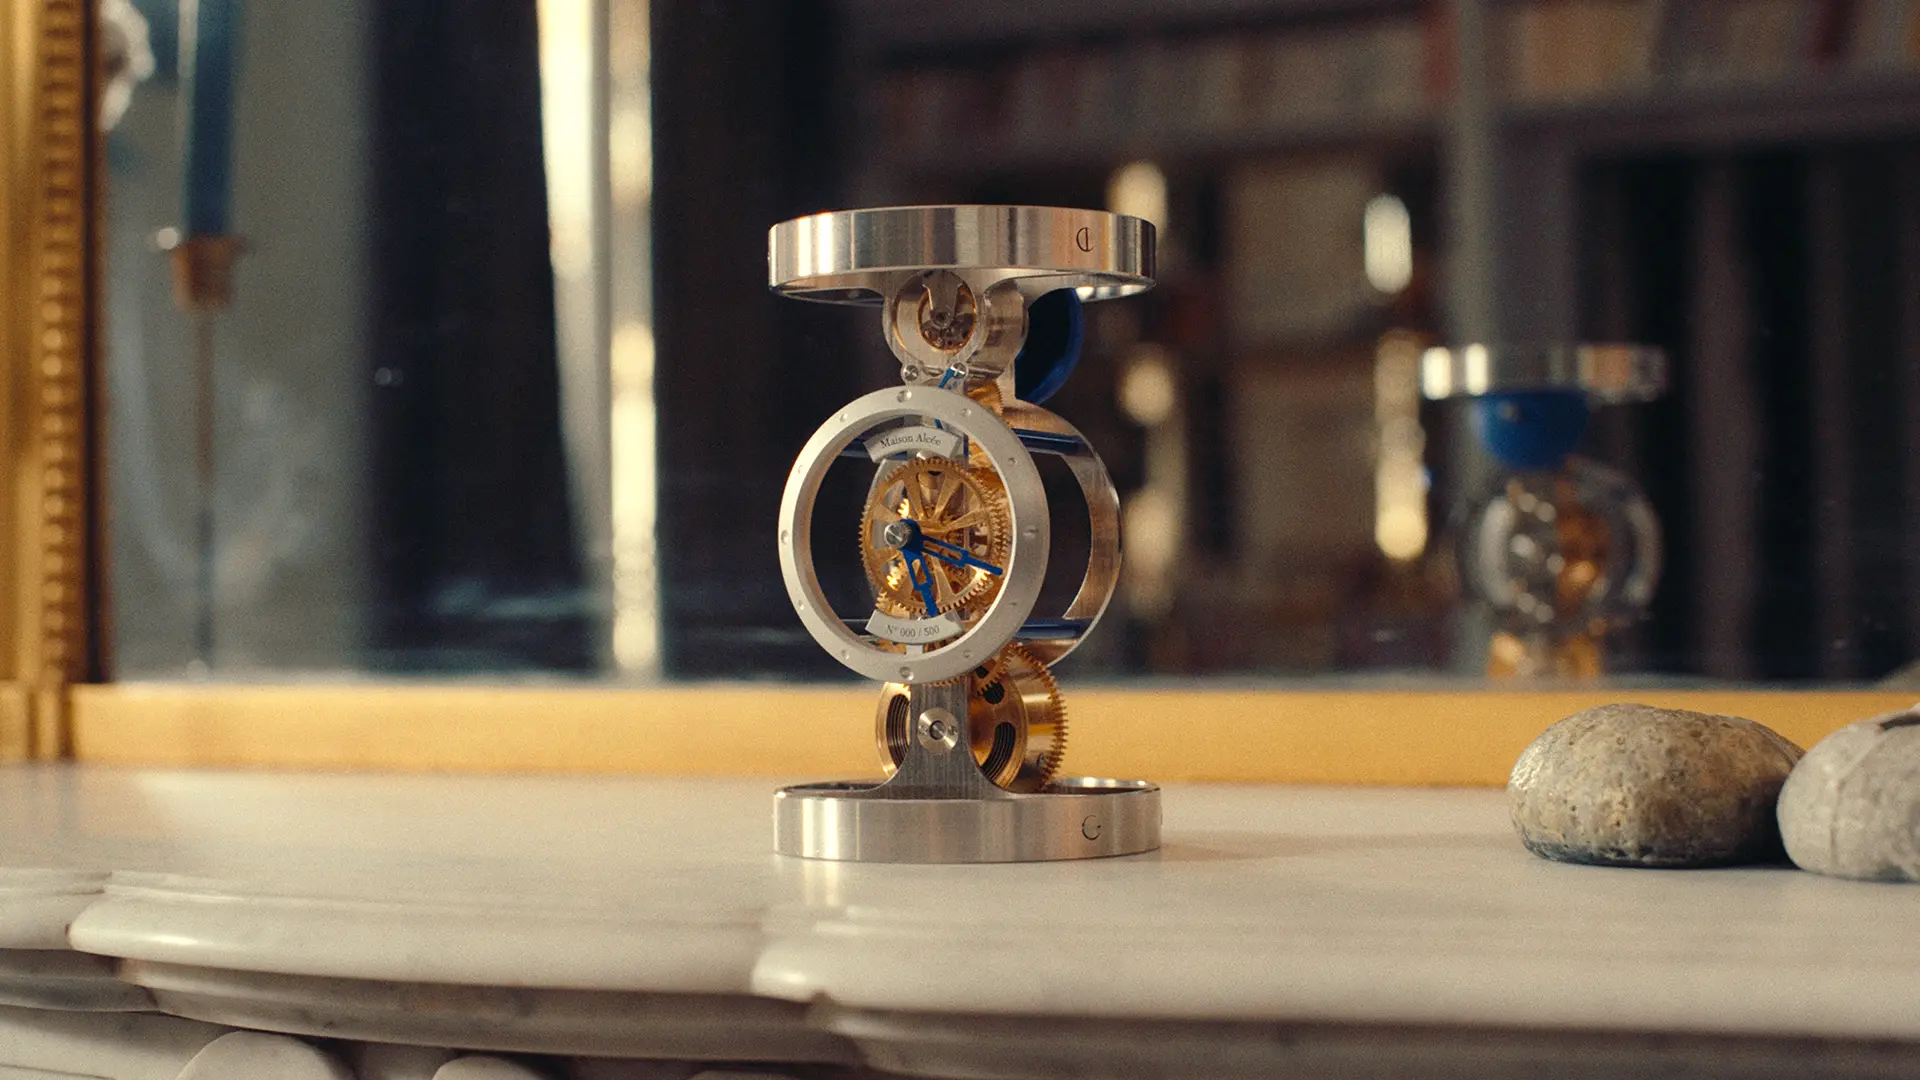 Maison Alcée's Persée Azur clock nominated for a GPHG award